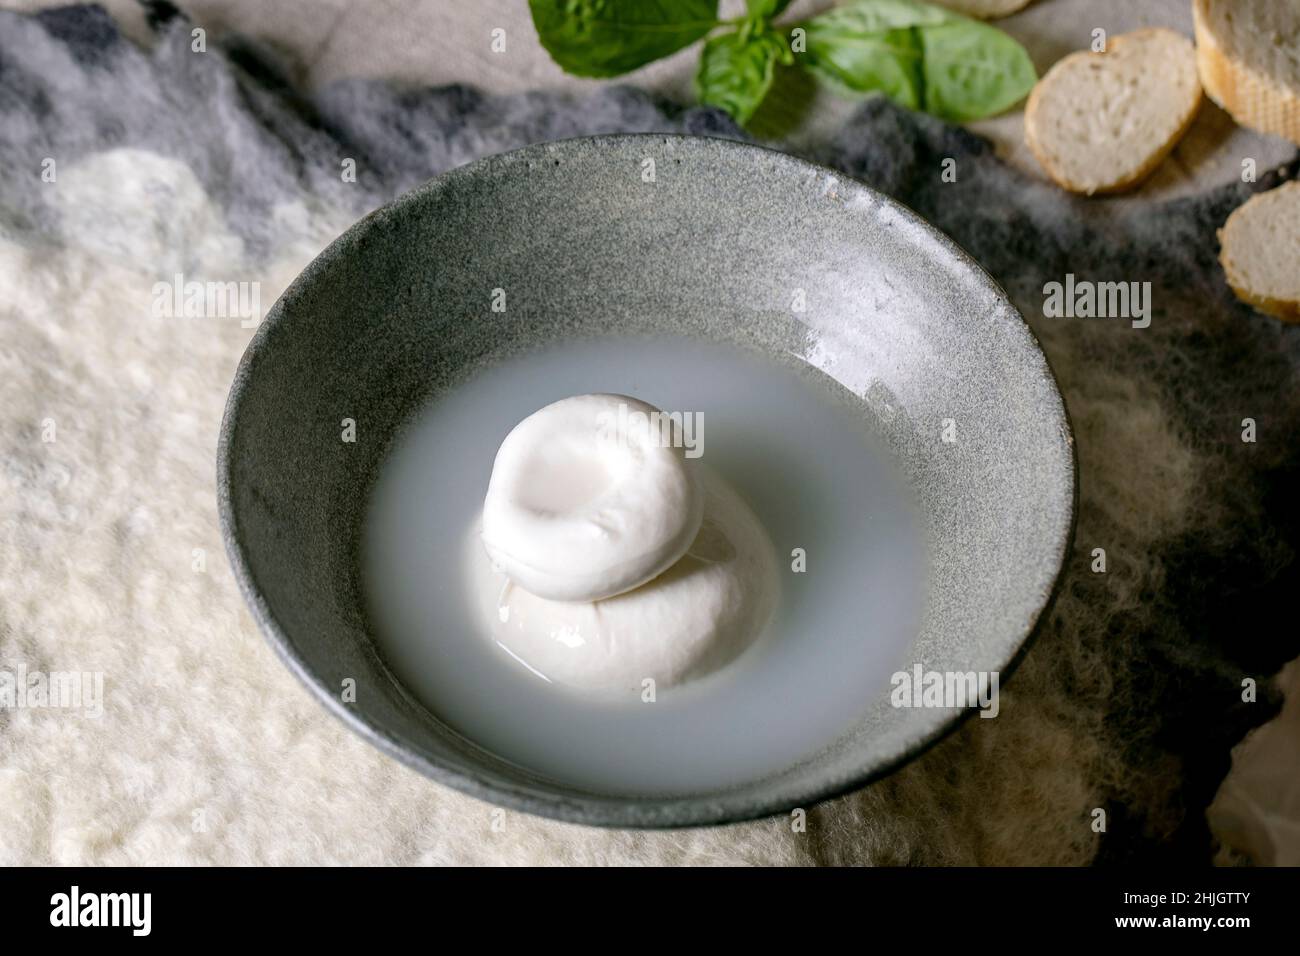 Queso tradicional italiano burrata anudado en un recipiente de cerámica gris sobre la mesa. Pan, aceitunas, verduras alrededor. Ingredientes para una cena mediterránea saludable. Foto de stock